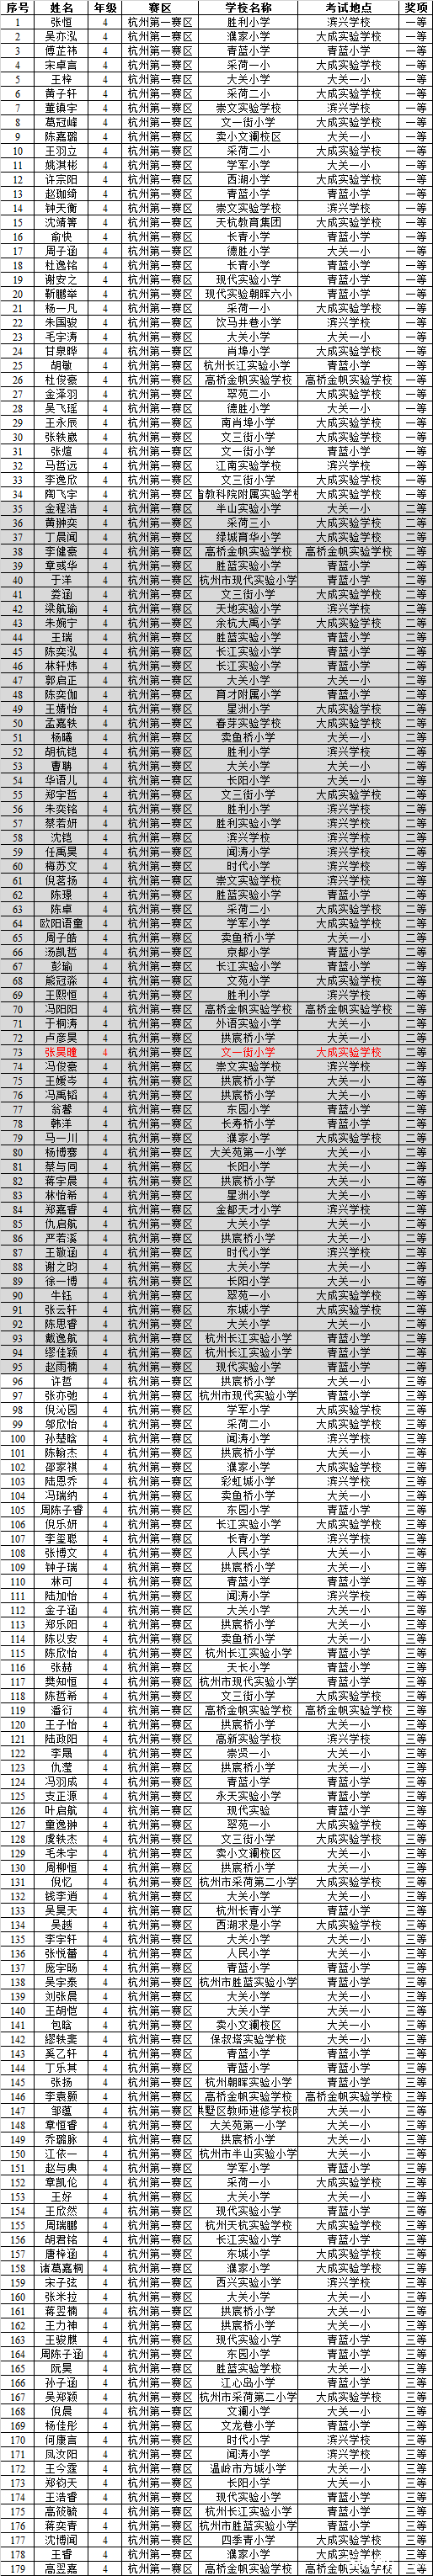 2016第14届走美杯杭州第一赛区四年级获奖名单1